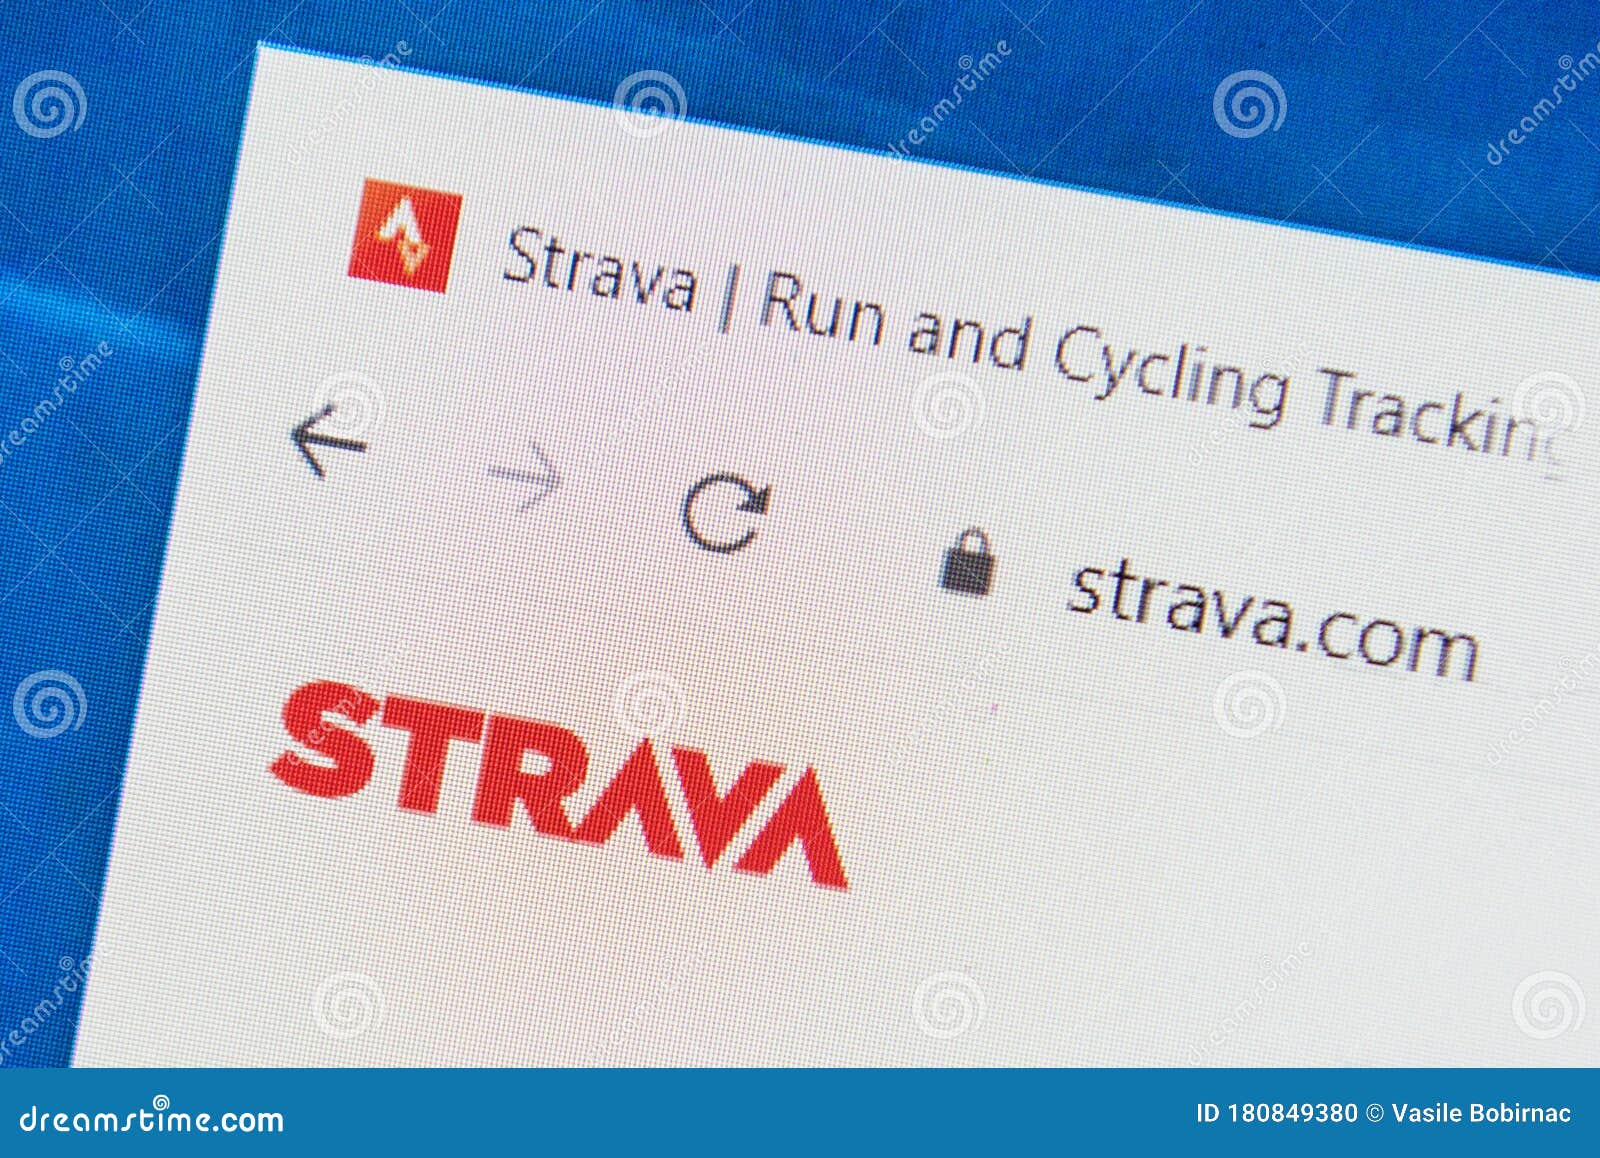 Website strava Strava Challenges: